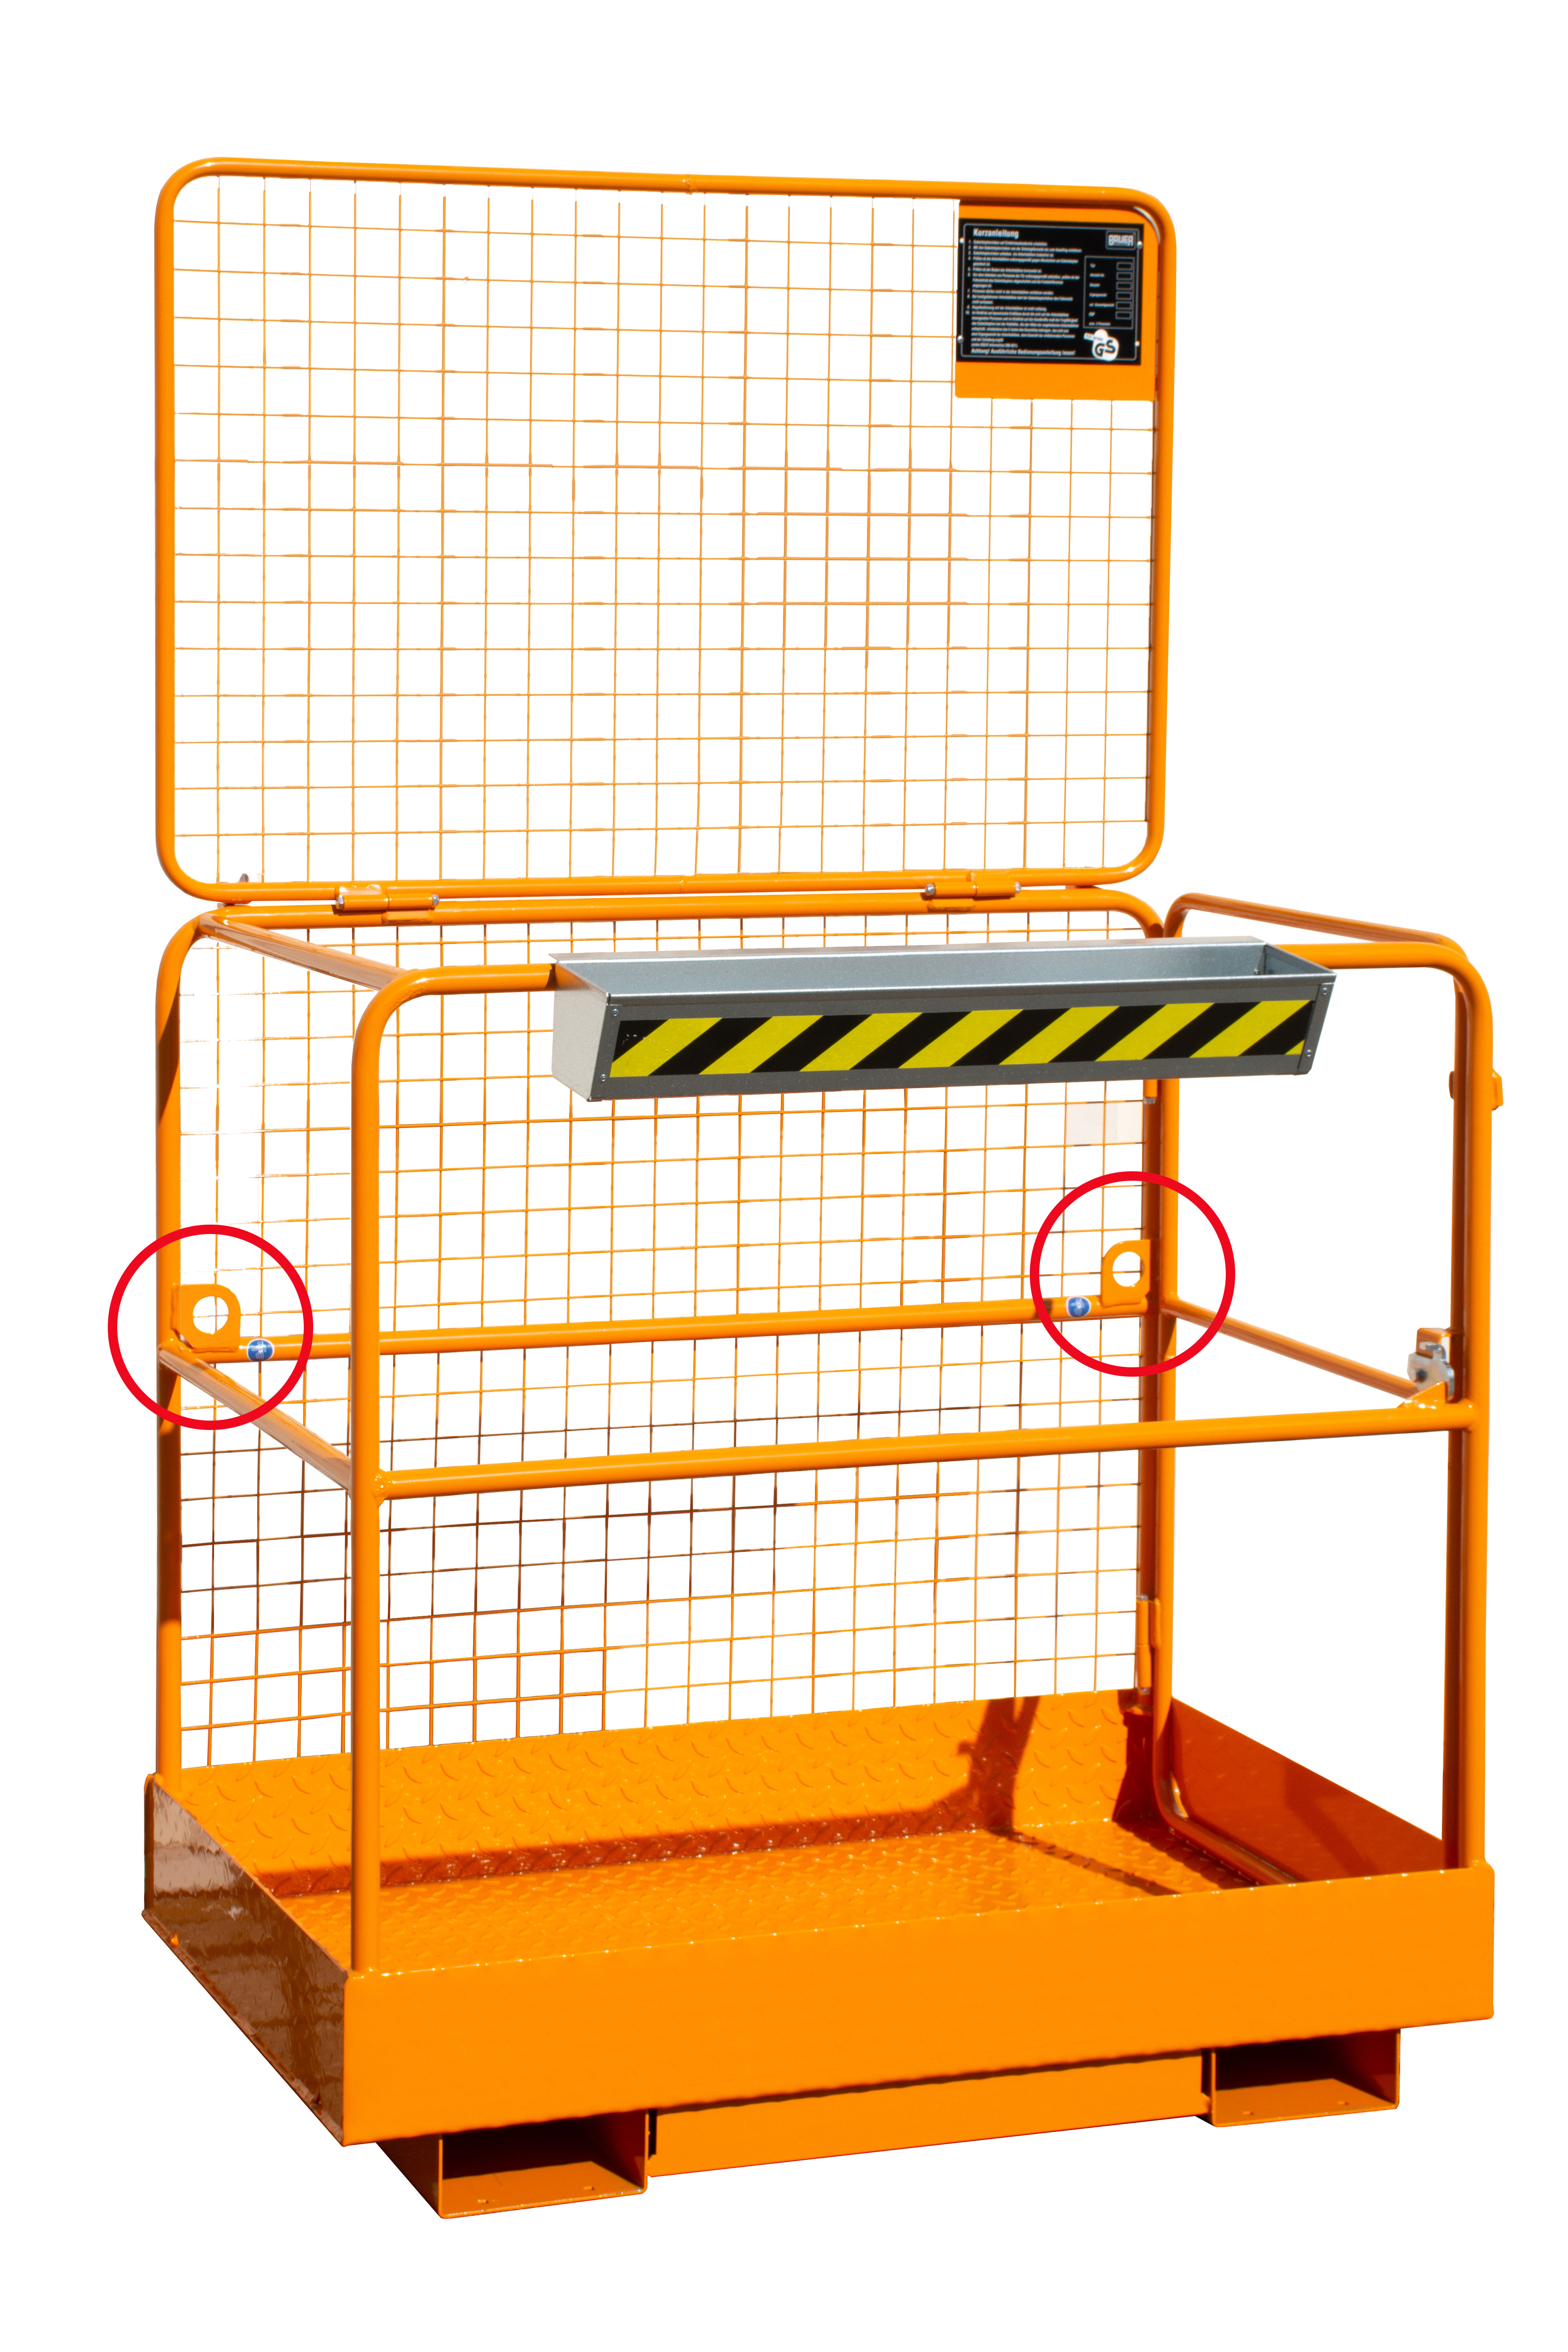 Bauer Stapler-Anbaugerät Sicherheitskorb SIKO – Aufnahme breite Seite – lackiert Gelborange mit 2 PSA-Anschlagvorrichtungen ausgestattet